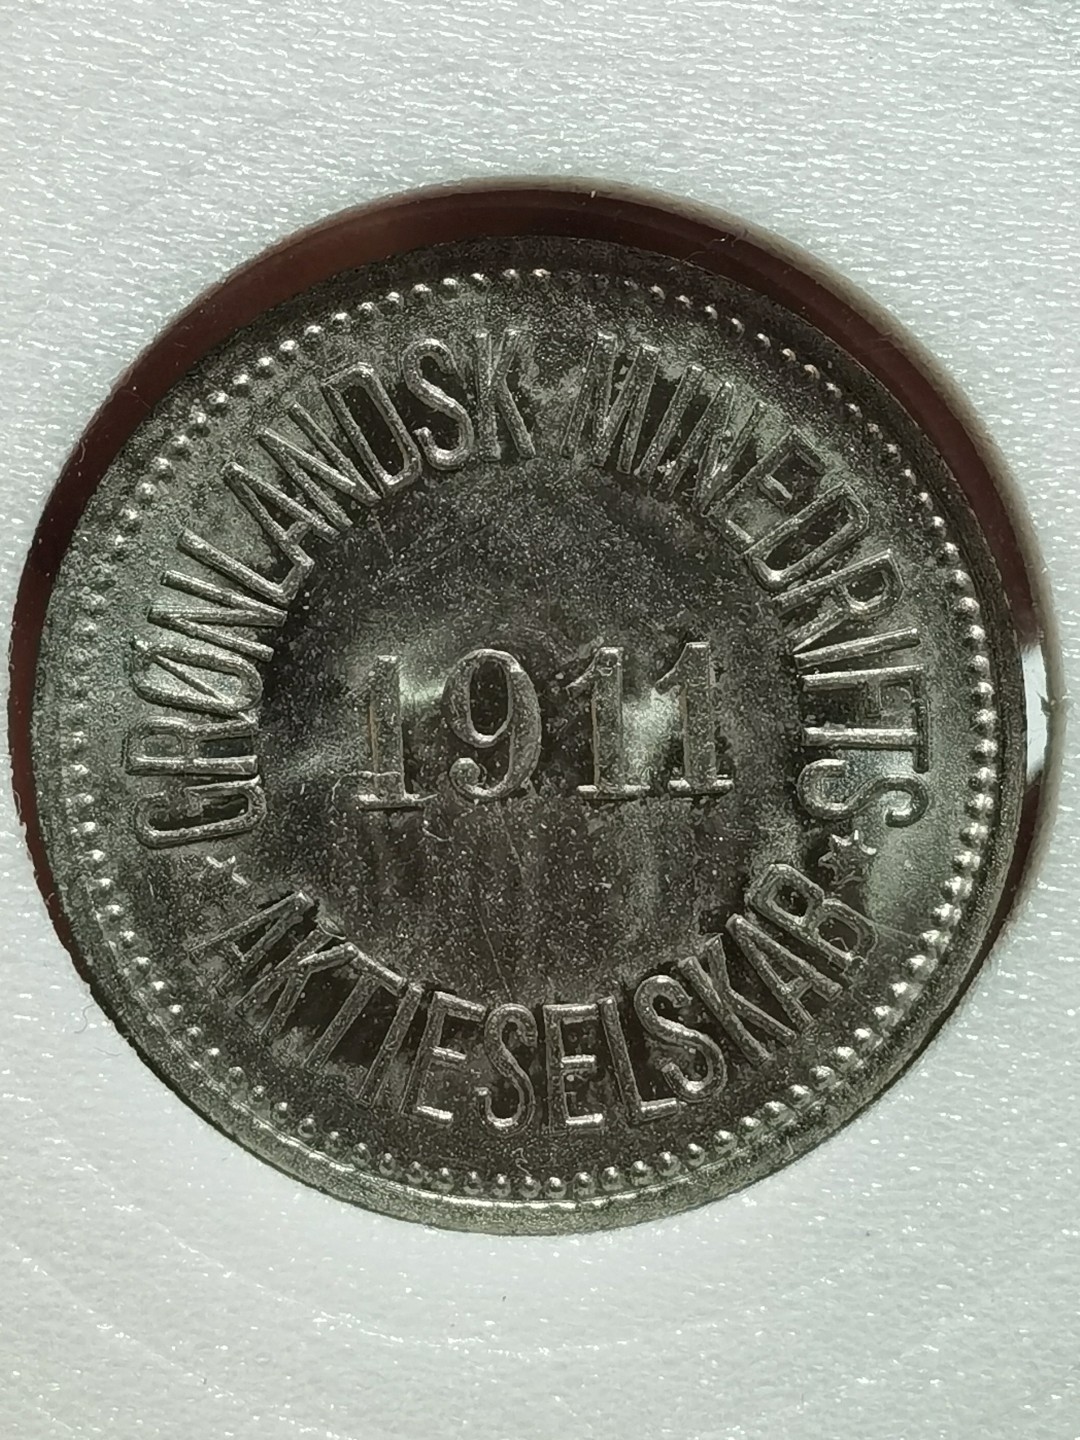 格陵兰 minedrift 1911